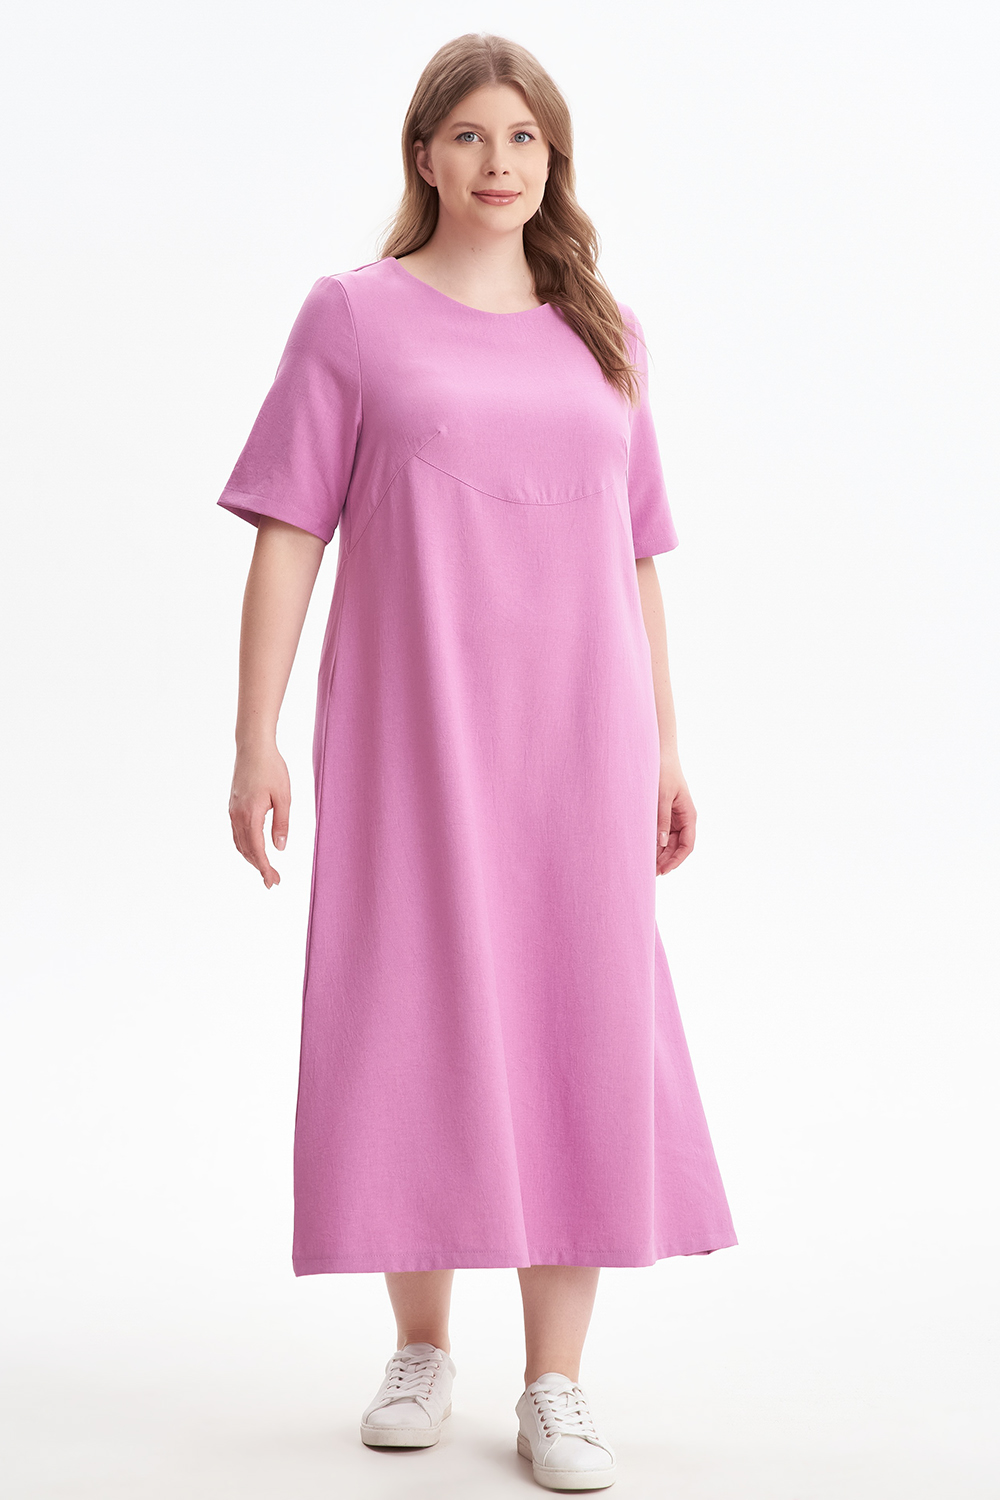 Платье женское OLSI 2305012 розовое 66 RU